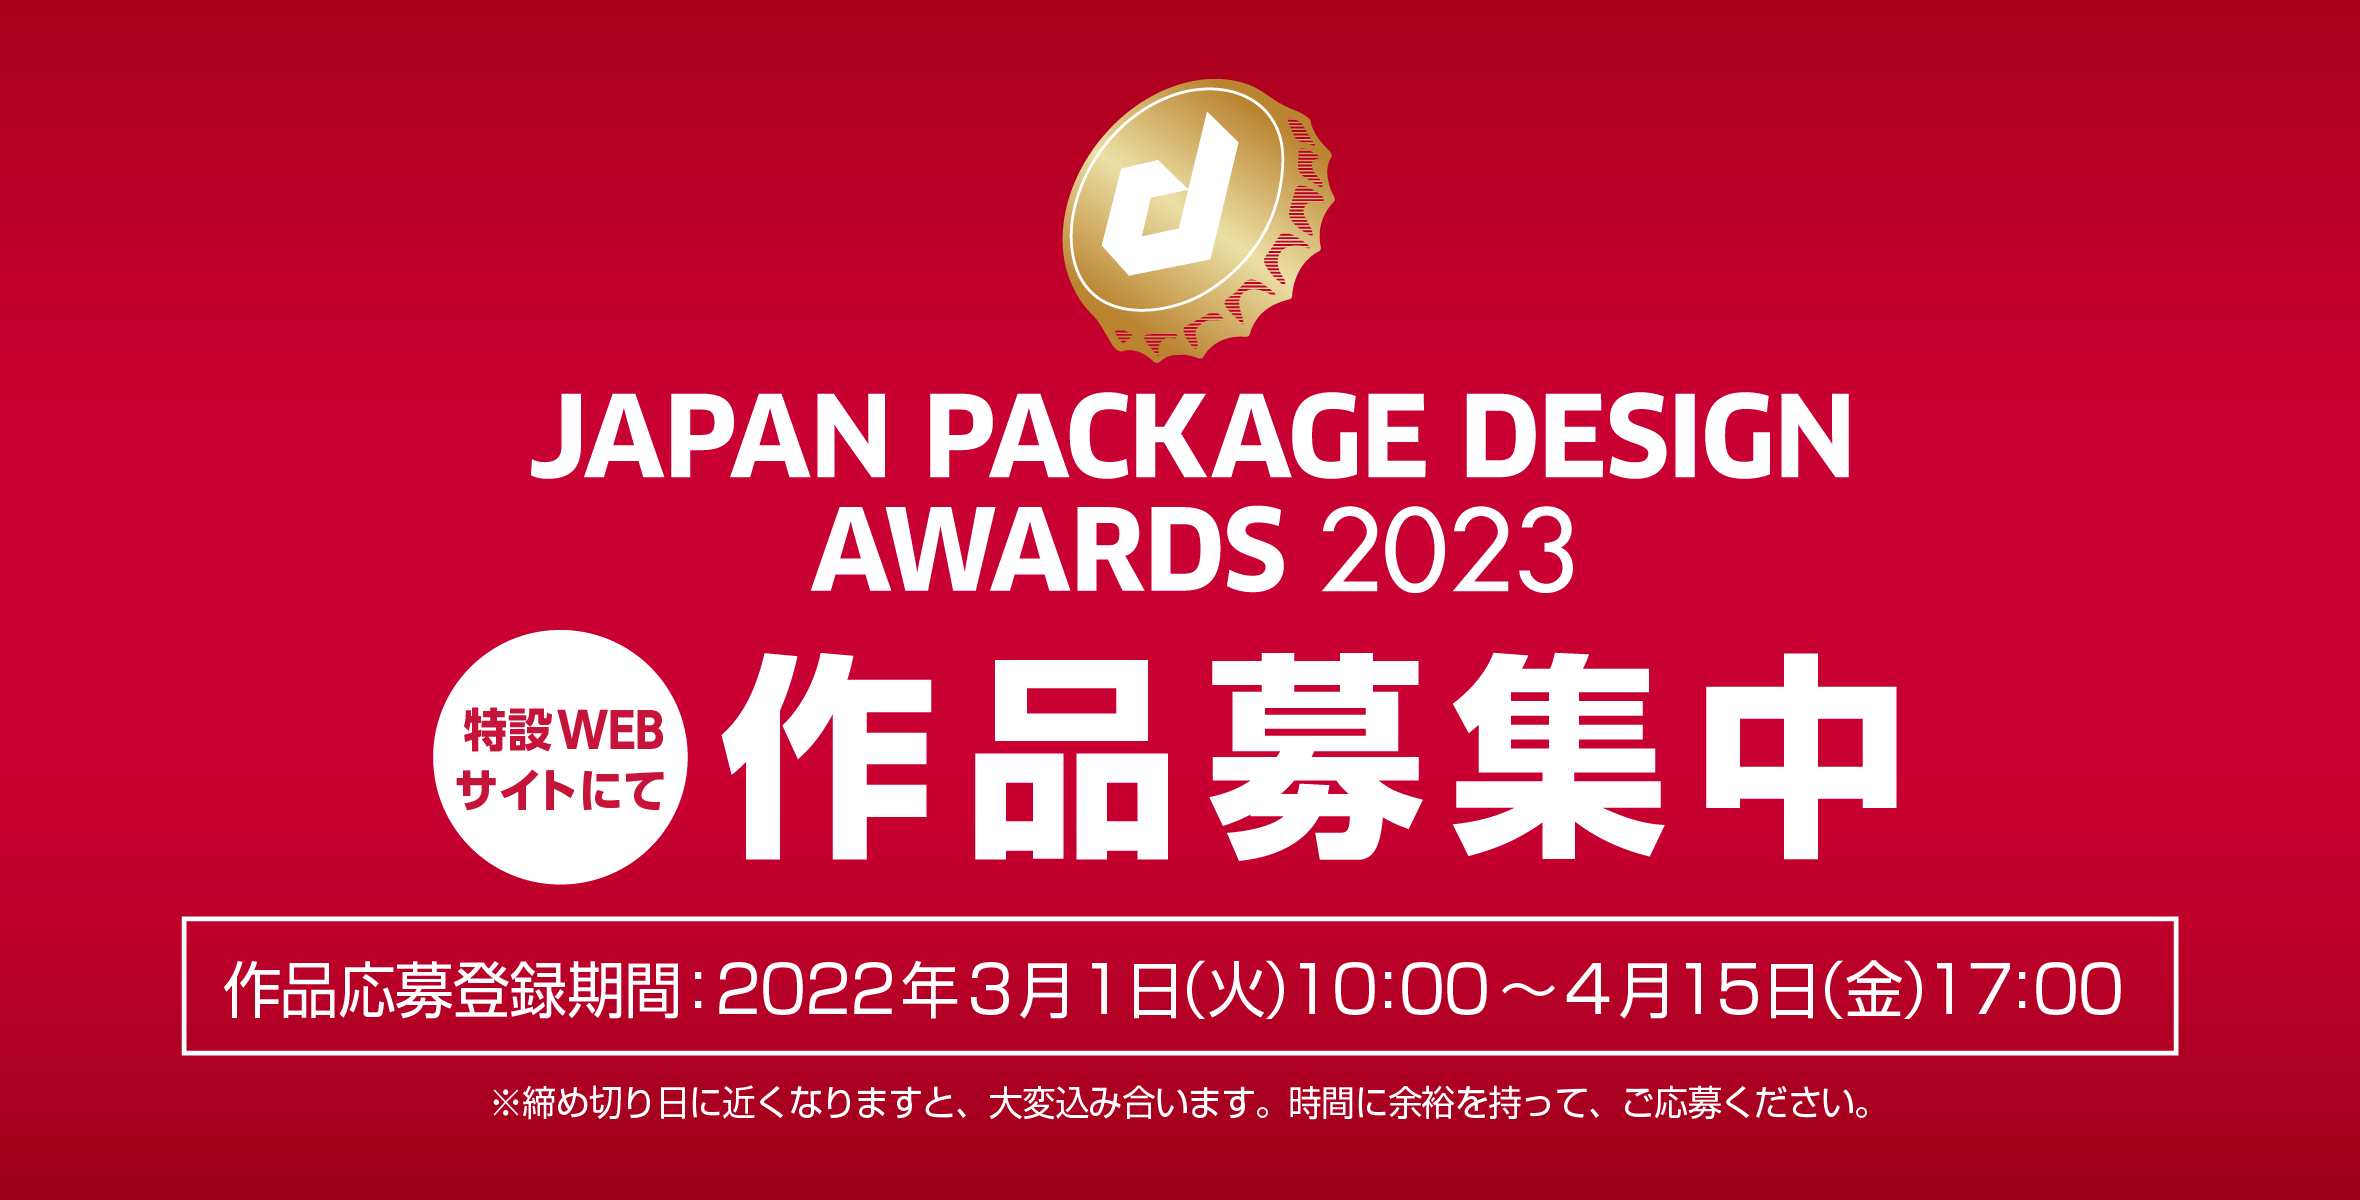 20回目を迎える「日本パッケージデザイン大賞2023」の作品募集が3月1日